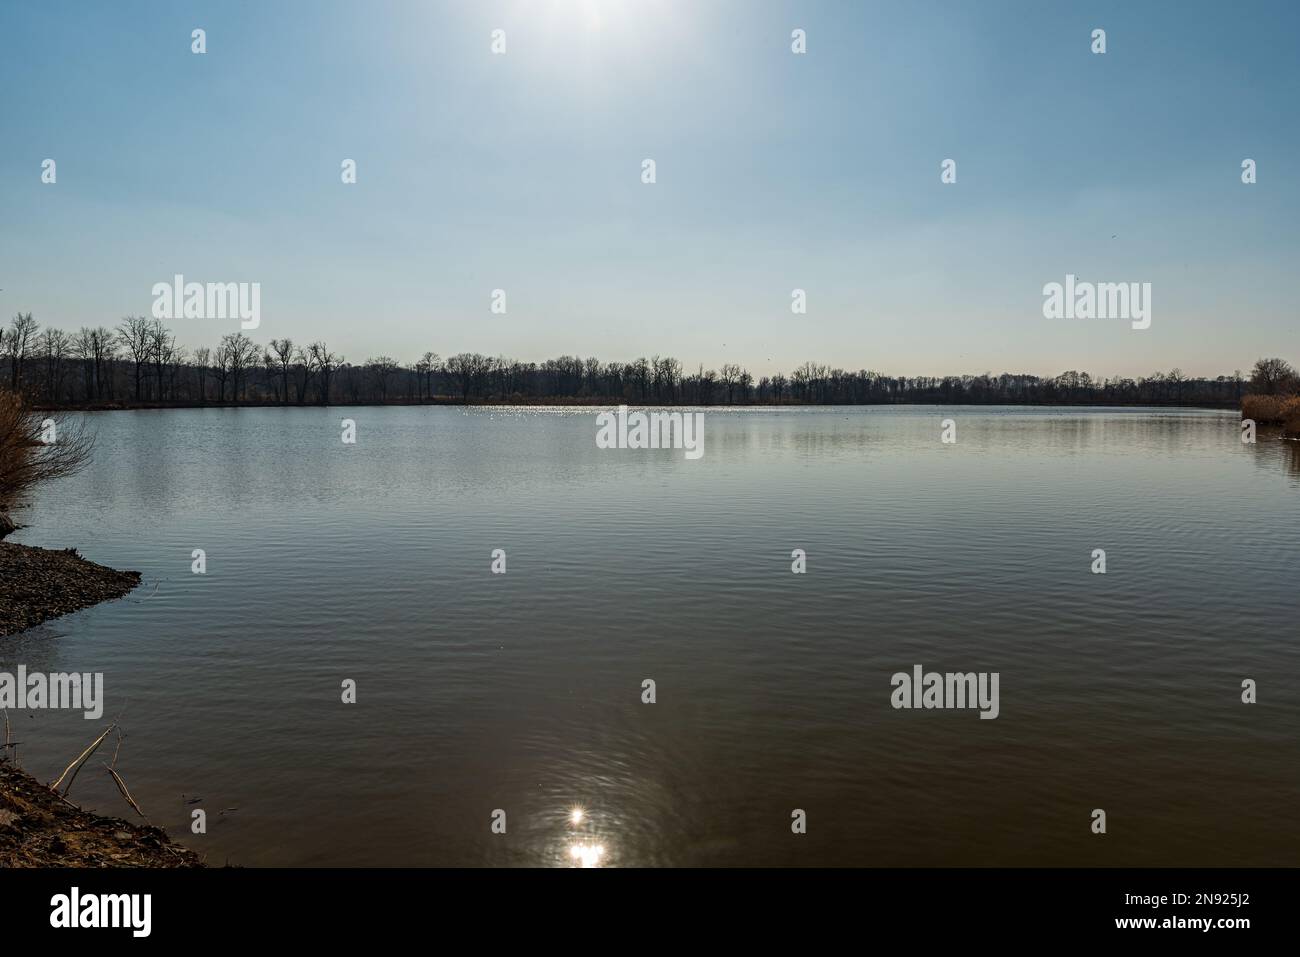 Laghetto con luci solari che si specchiano sul terreno d'acqua e foresta sullo sfondo durante una bella giornata con cielo limpido in CHKO Poodri vicino a Ostrava città in ceco Foto Stock